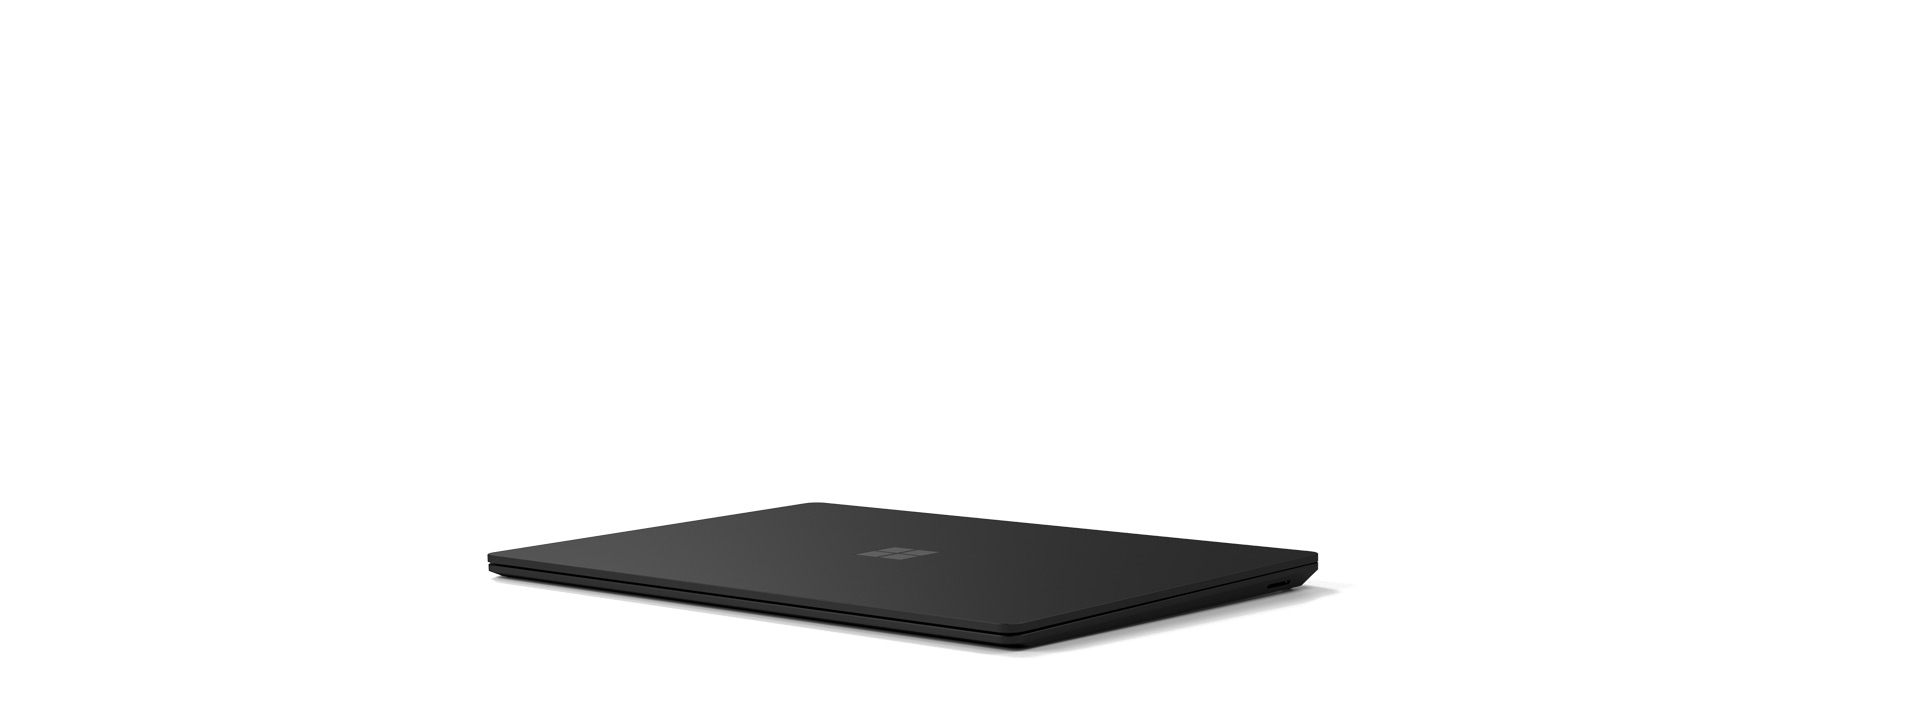 Ένα Surface Laptop 4 σε κλειστή θέση.